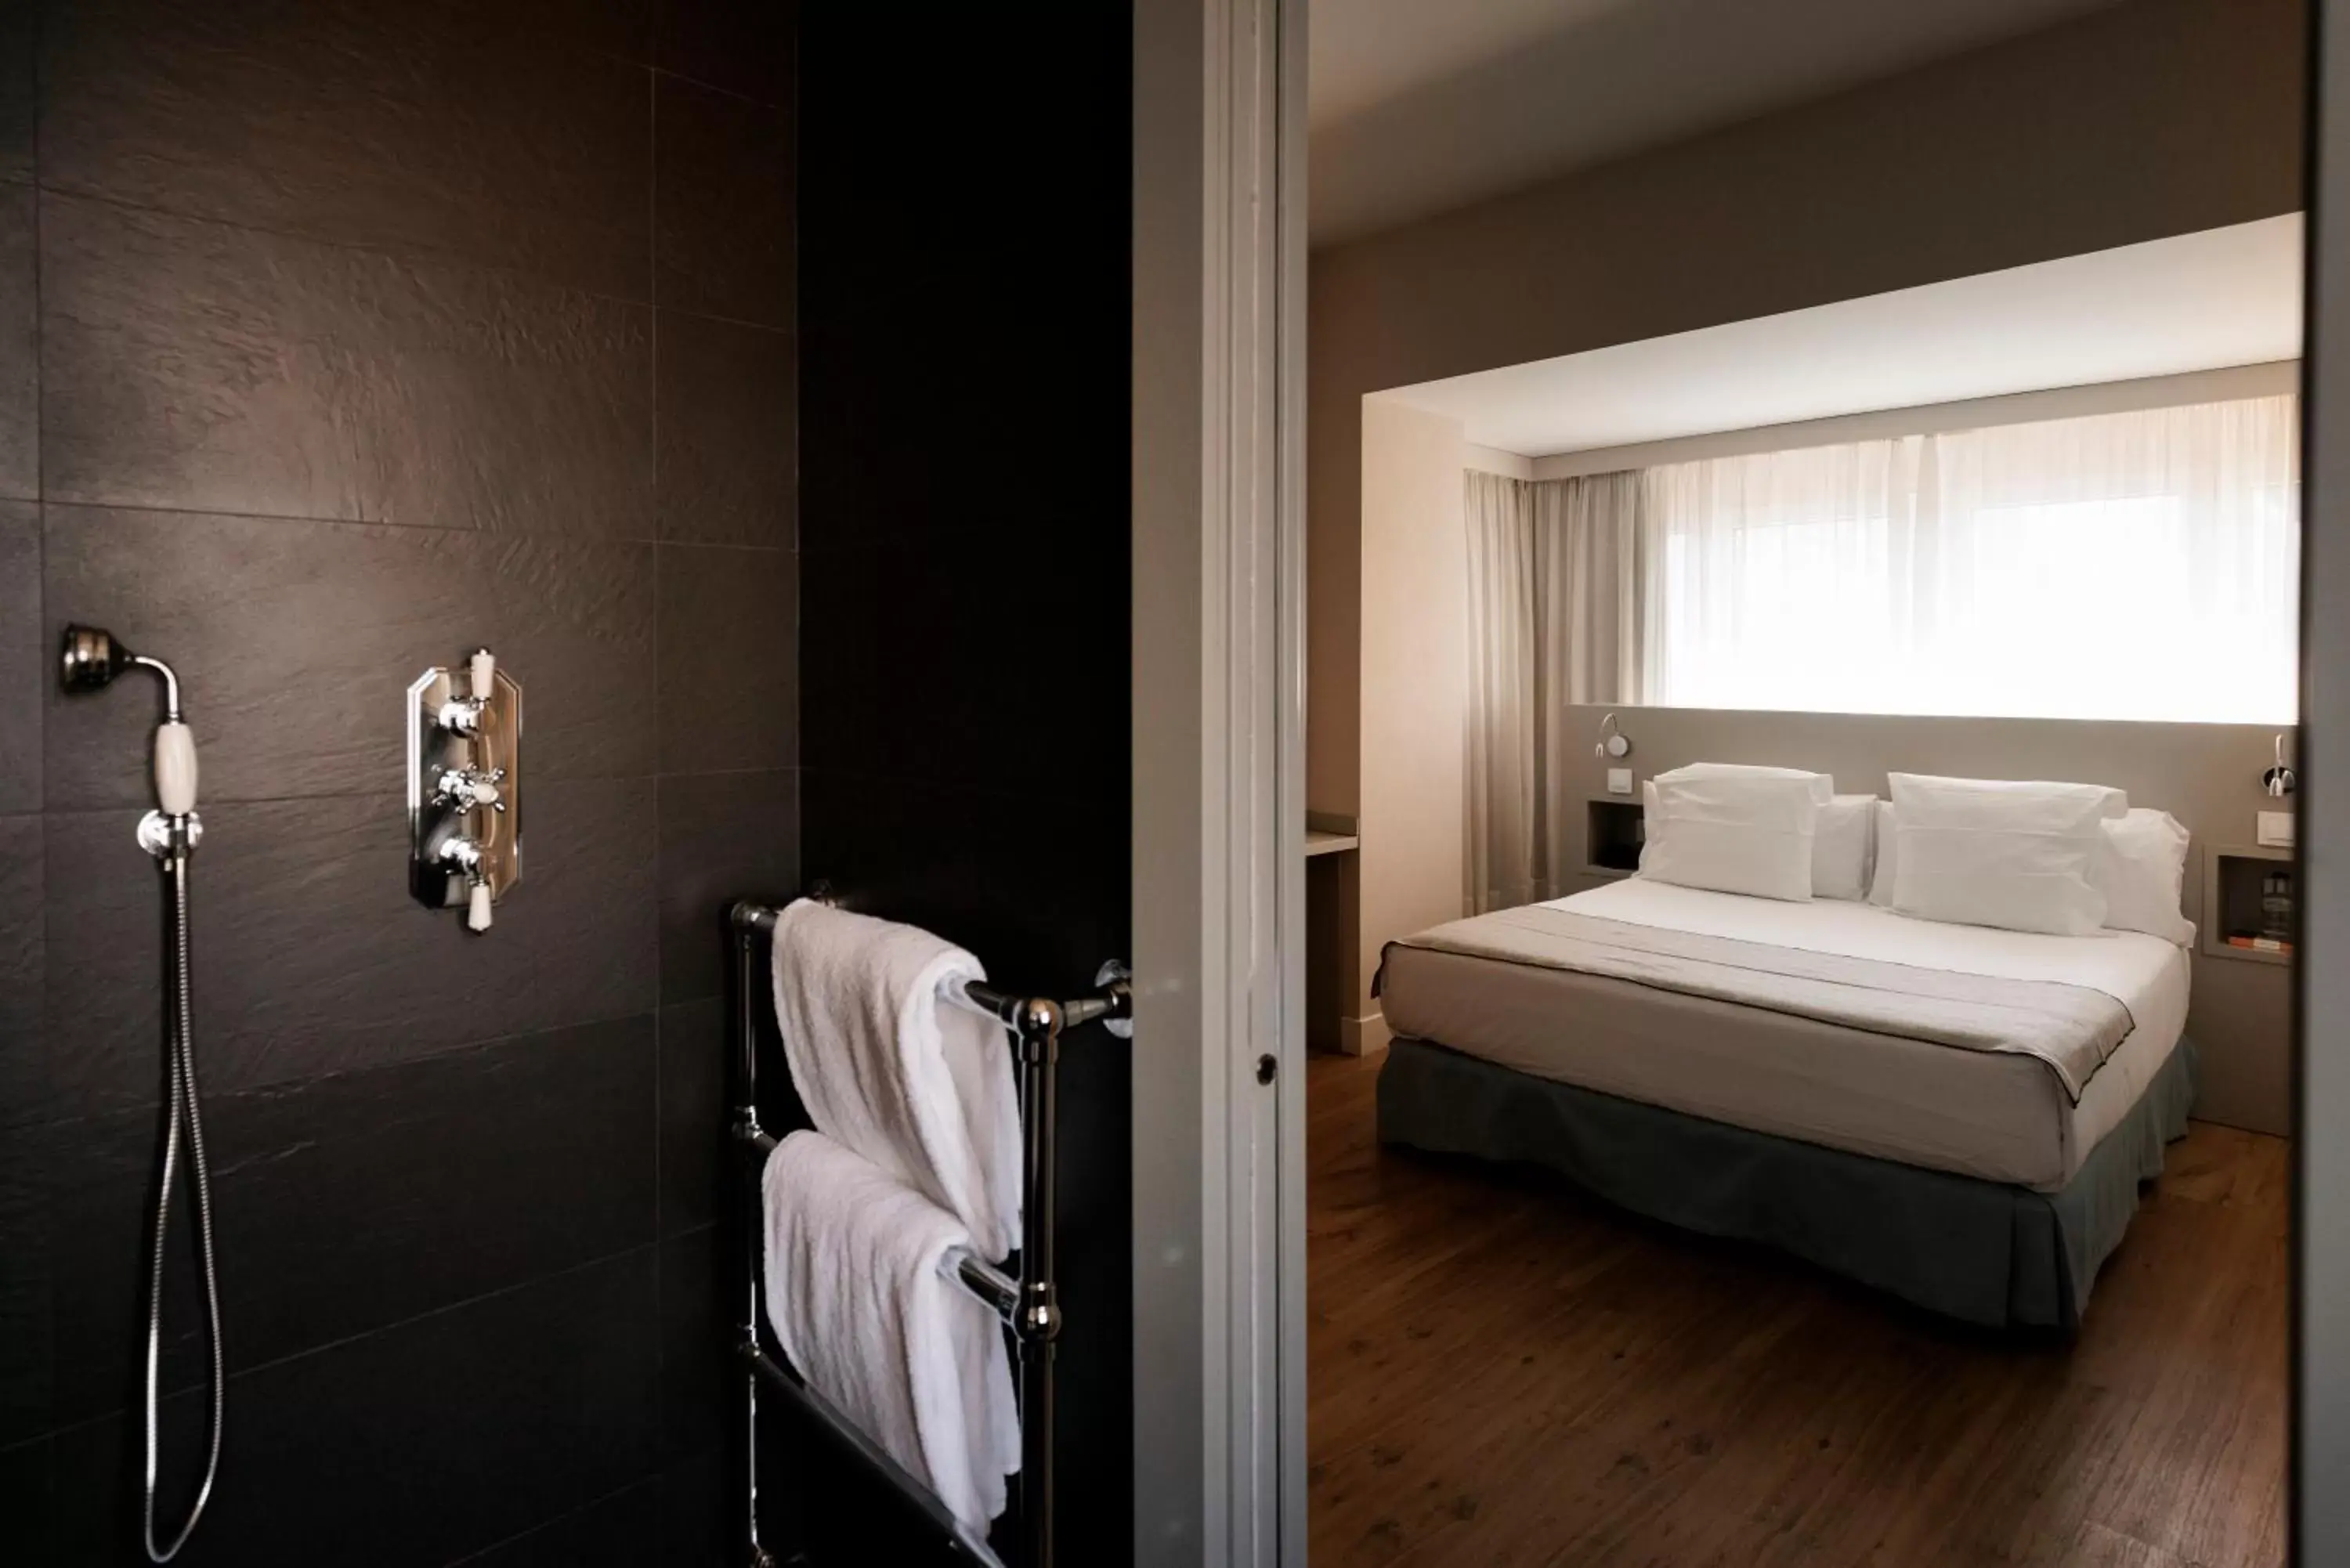 Bedroom, Bathroom in Hotel PAX Torrelodones